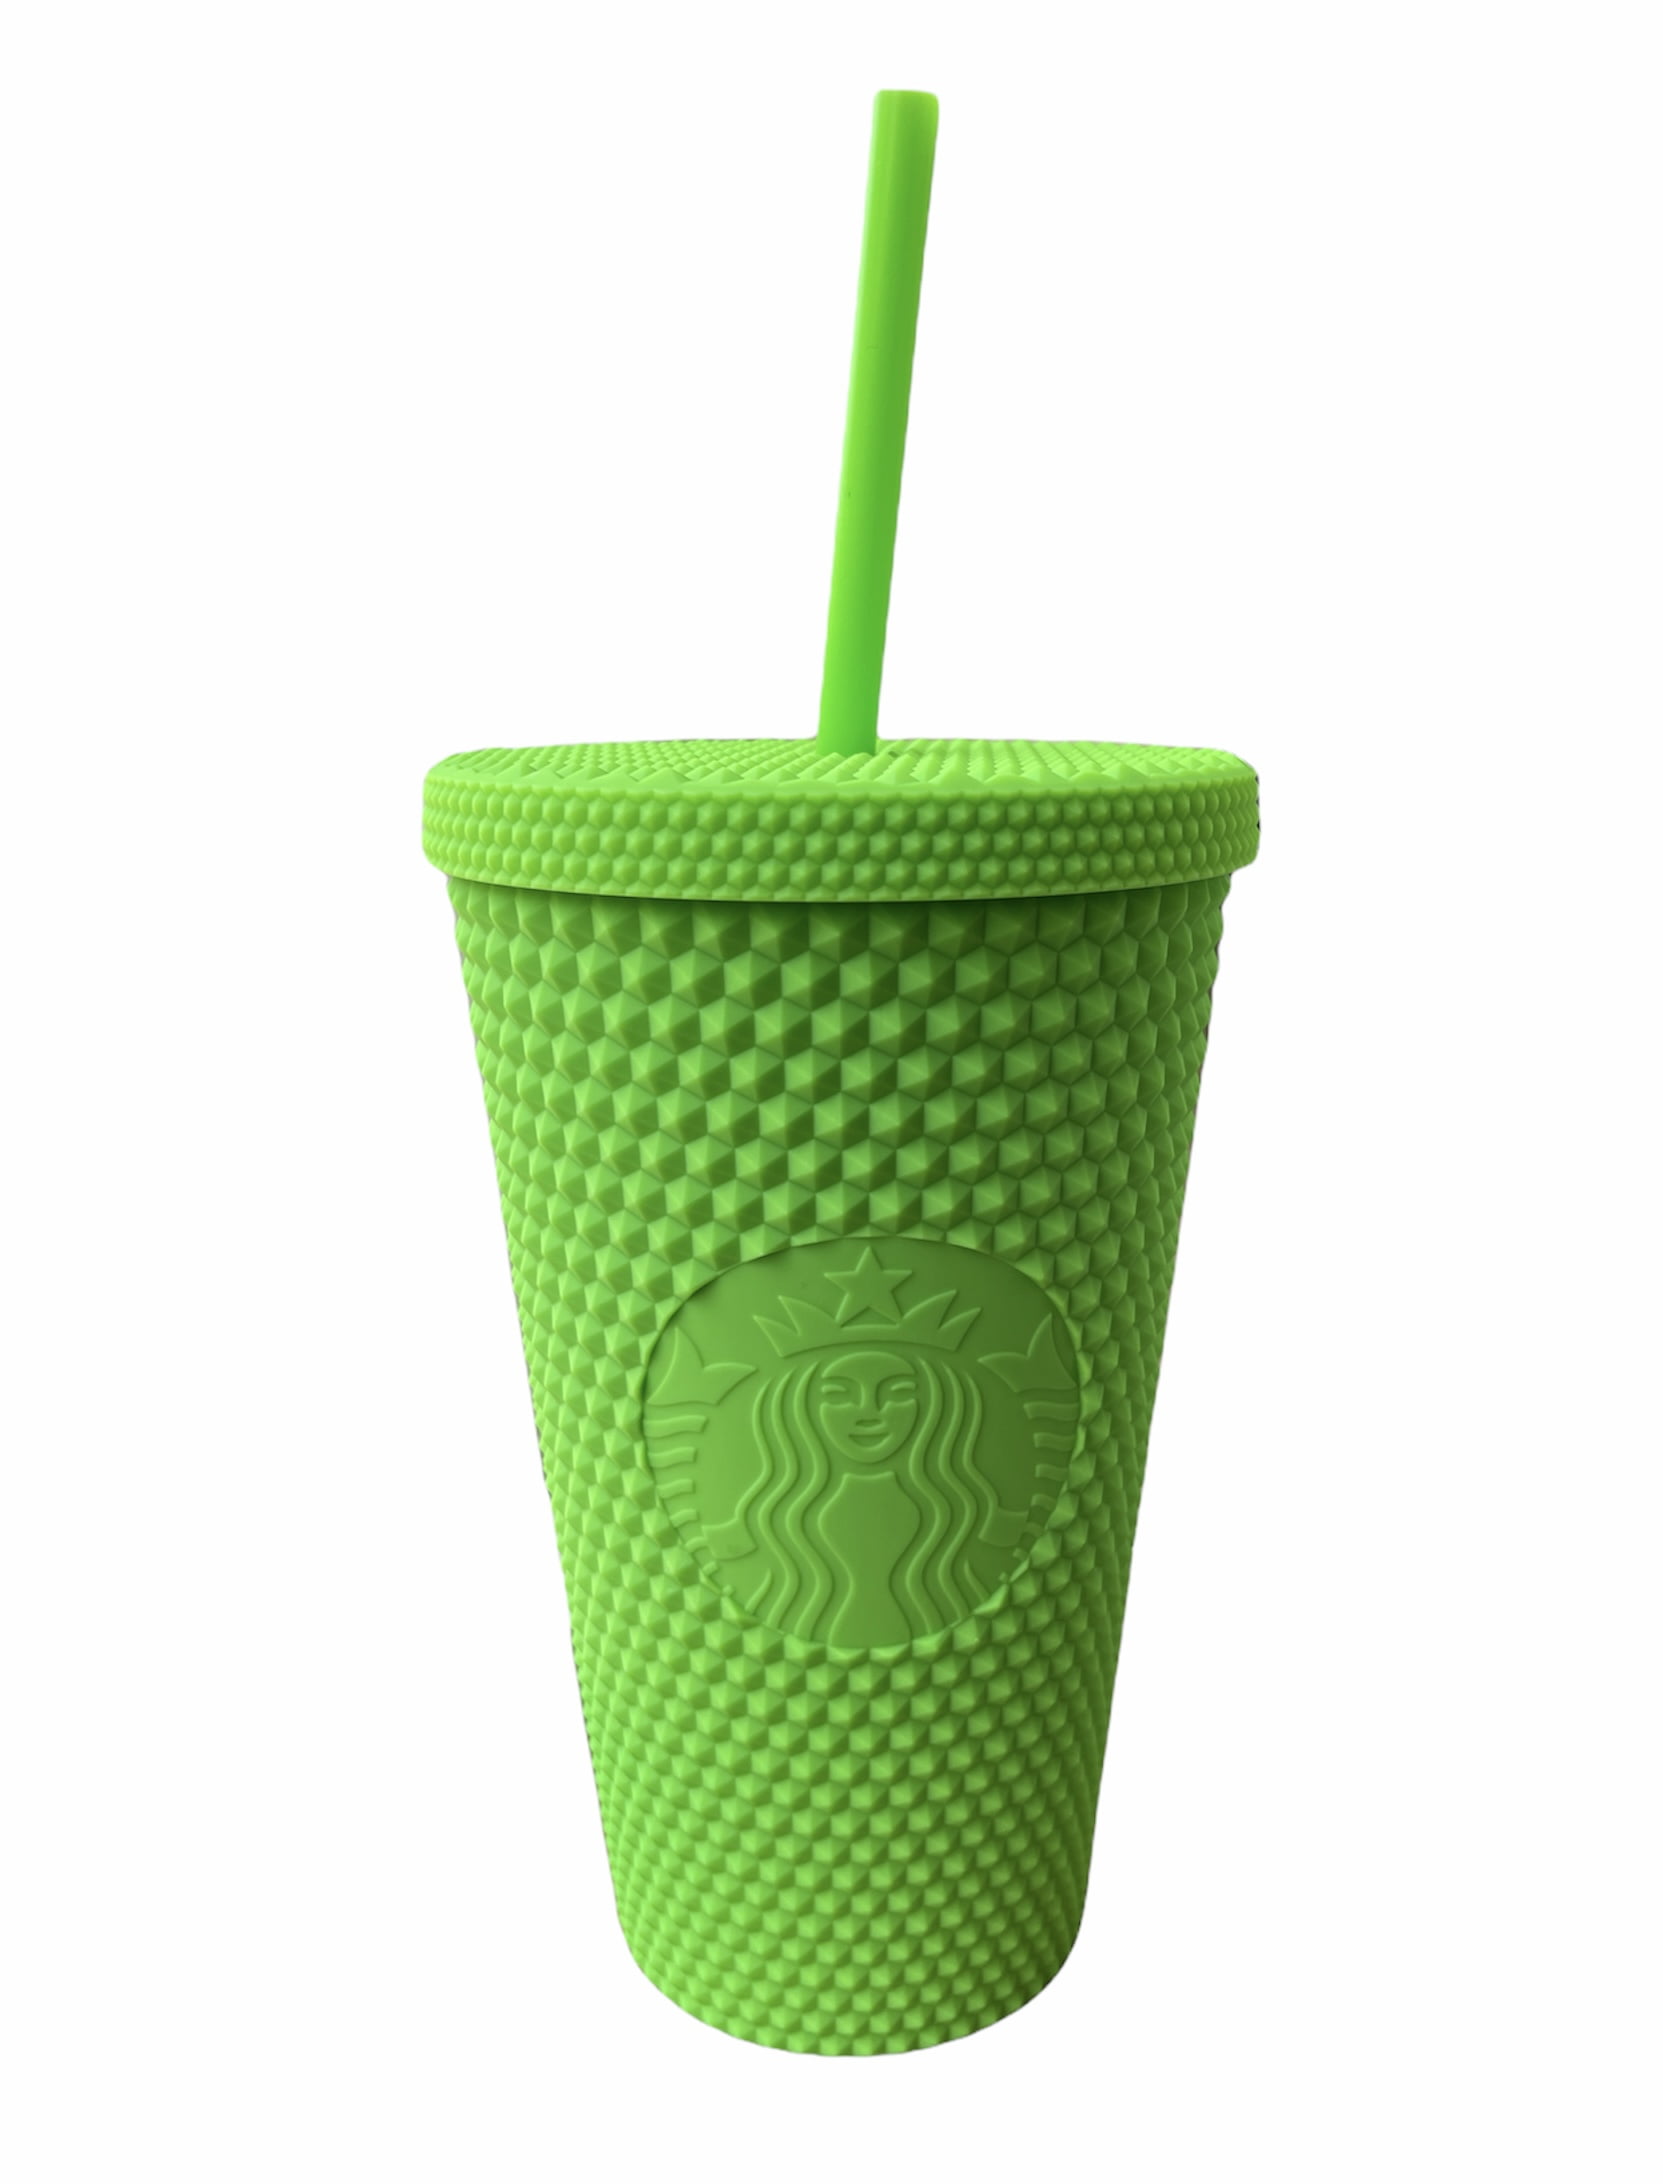 Starbucks Fall 2021 Neon Green Studded Bling 16 oz Grande Tumblr